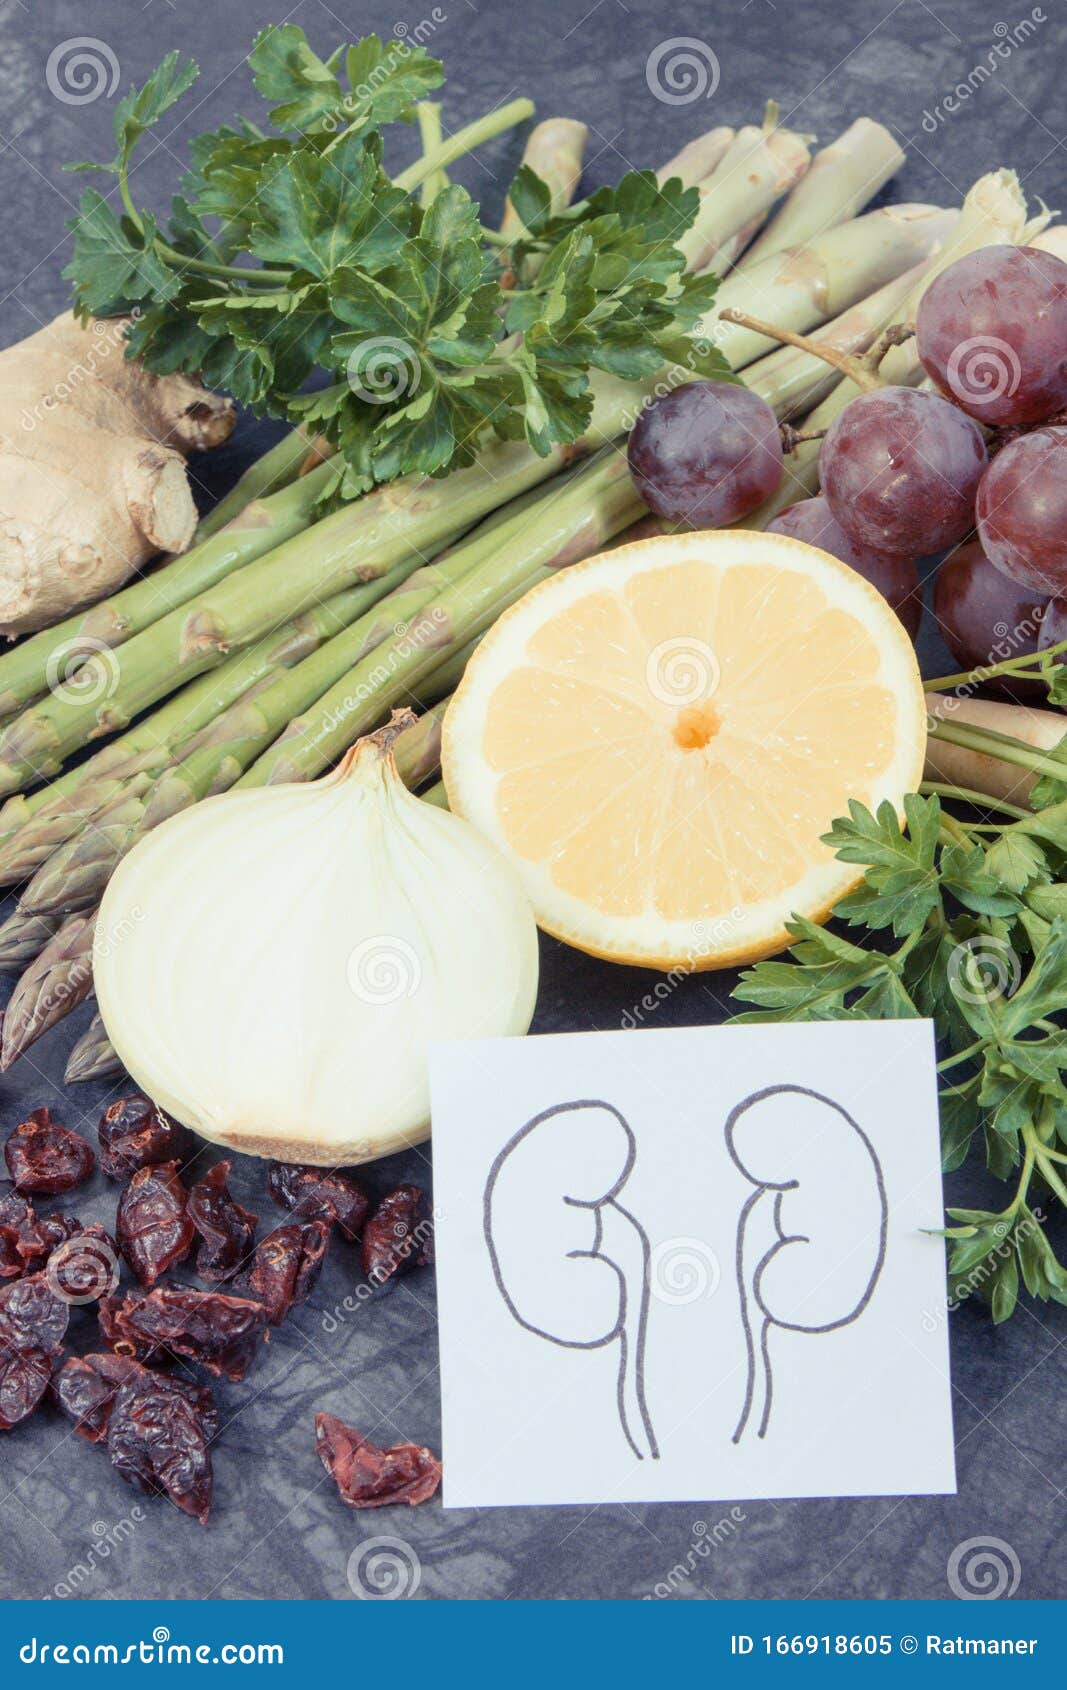 Dibujo De Riñones Y Alimentos Sanos Que Contengan Vitaminas Y Minerales  Imagen de archivo - Imagen de alimento, minerales: 166918605